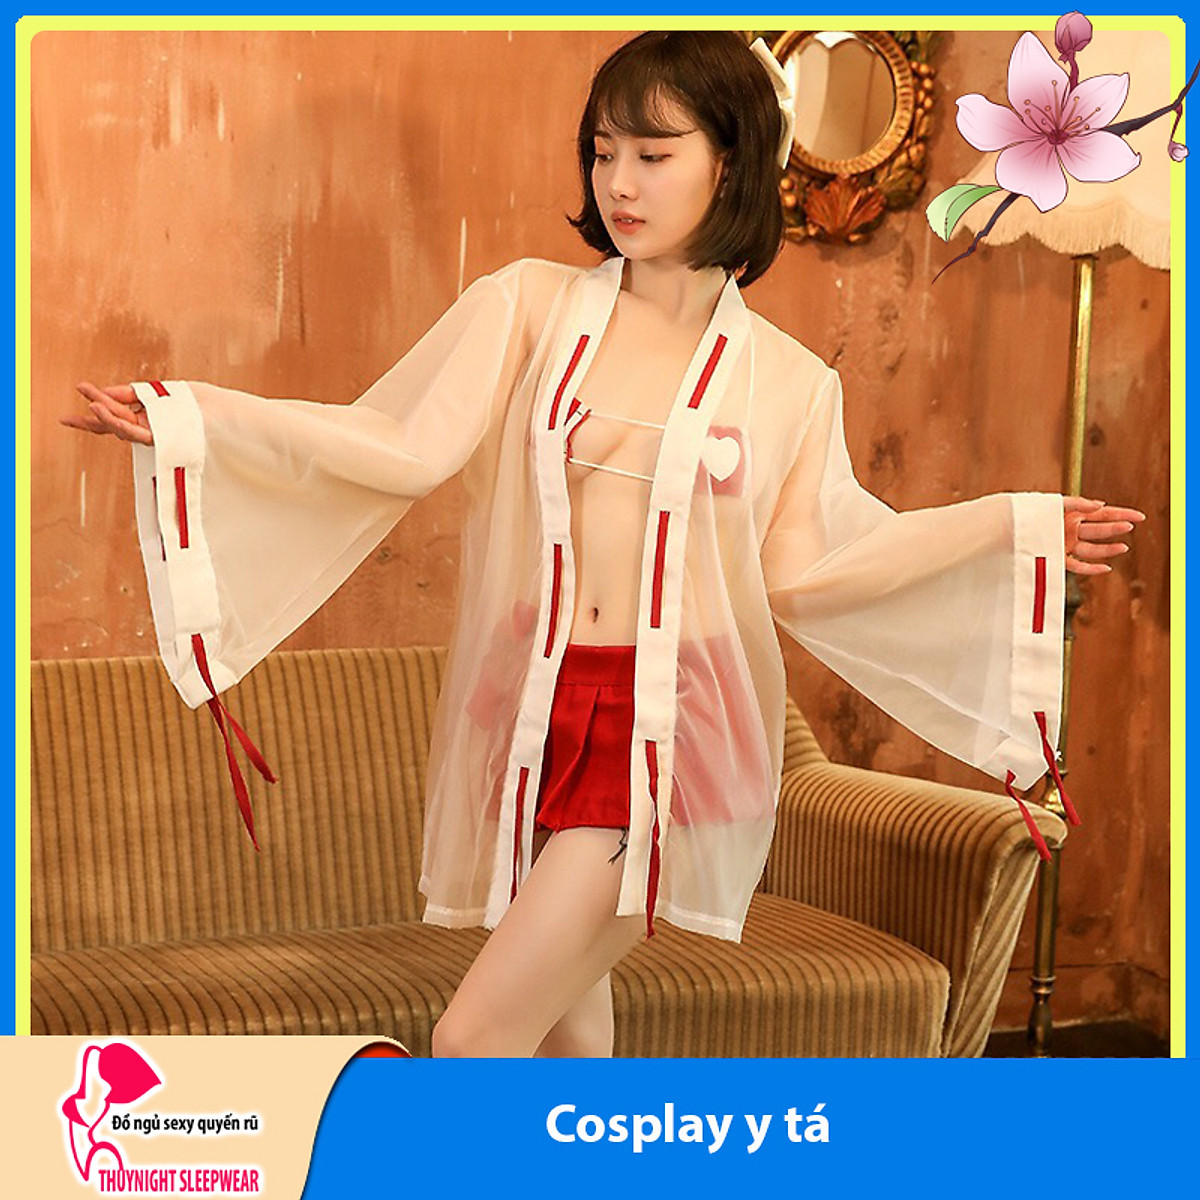 Váy ngủ Cosplay sexy cao cấp BT0102 - Đồ ngủ cosplay kèm áo choàng xuyên thấu - Đồ ngủ mặc nhà - Đầm ngủ cosplay nữ